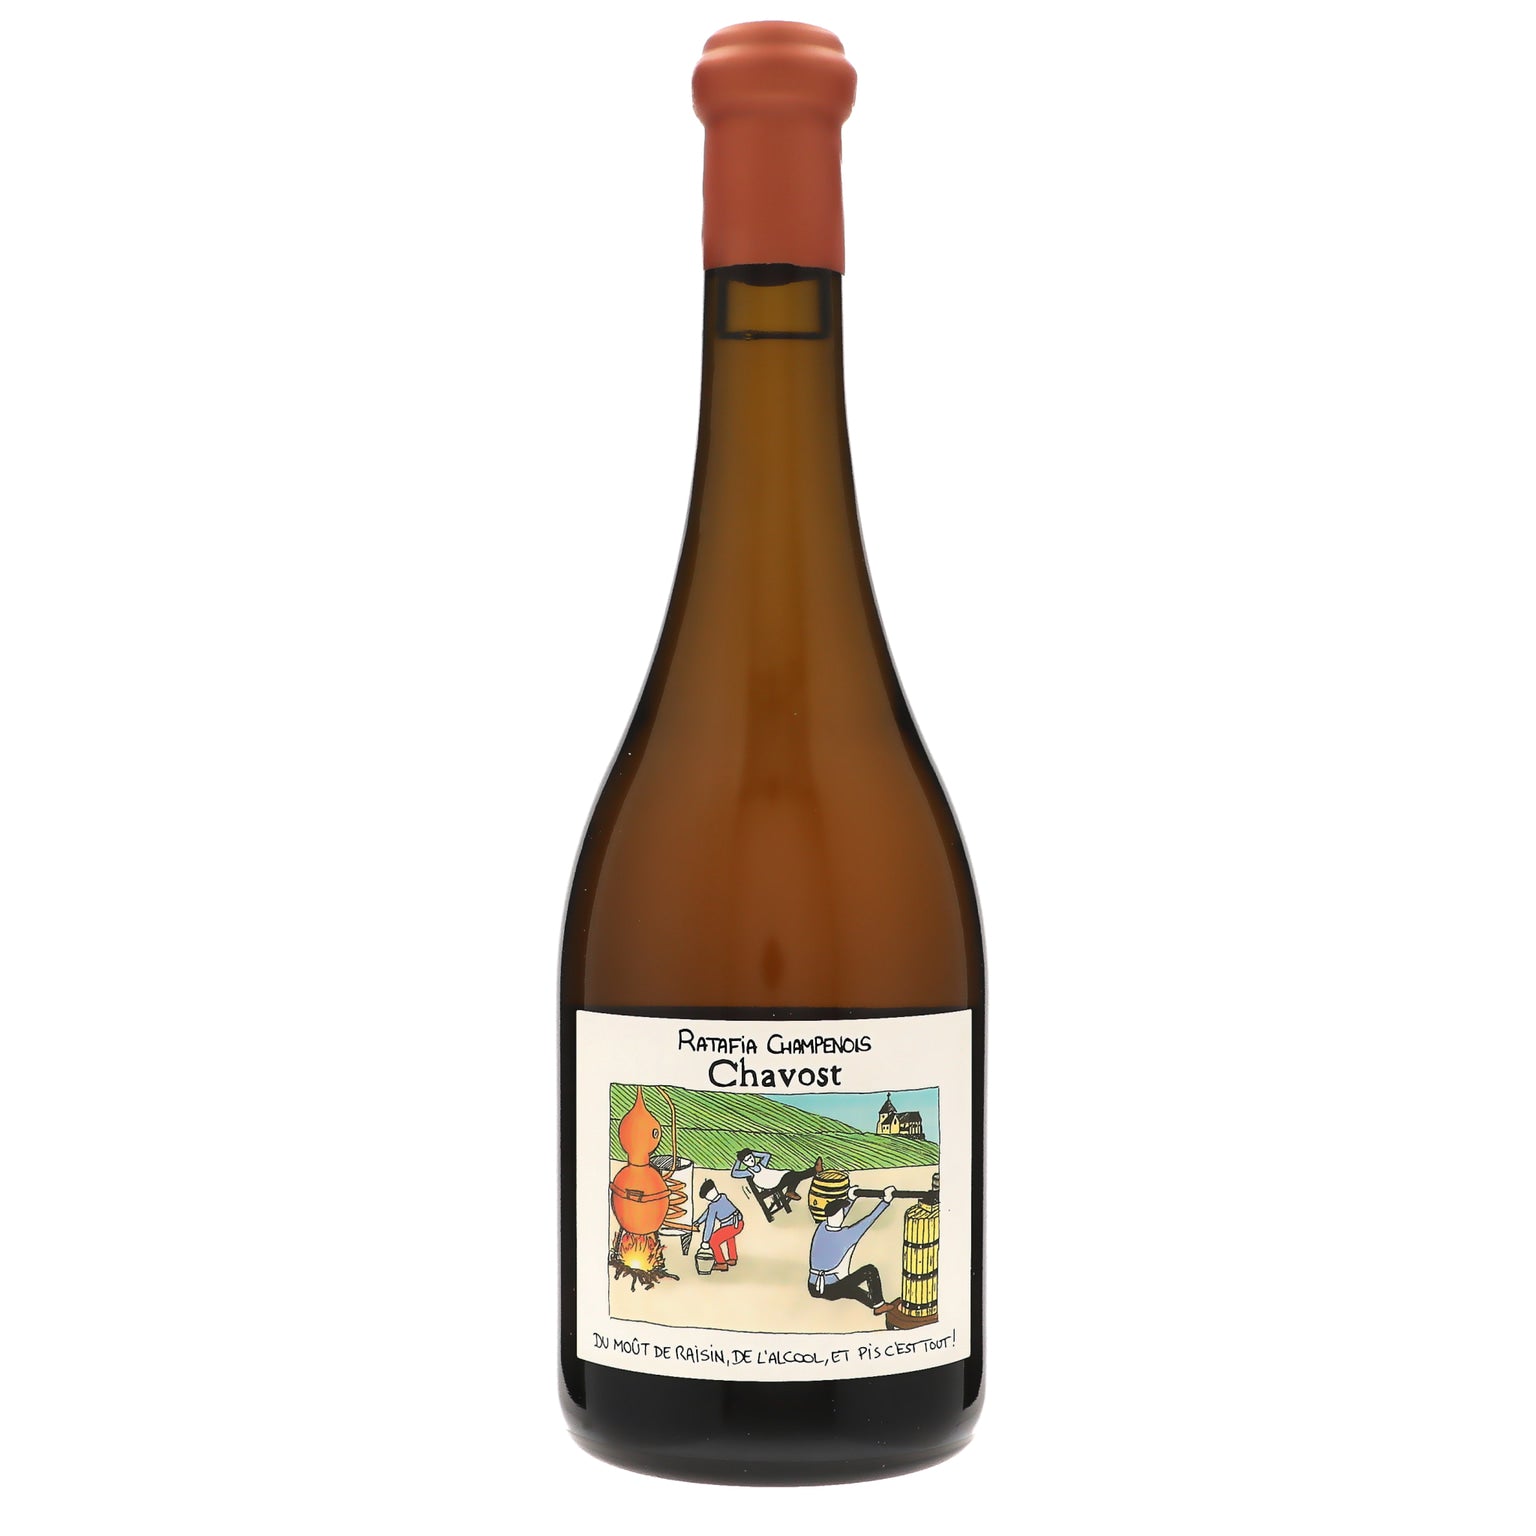 A New PGI – Ratafia de Champagne! – Wine, Wit, and Wisdom